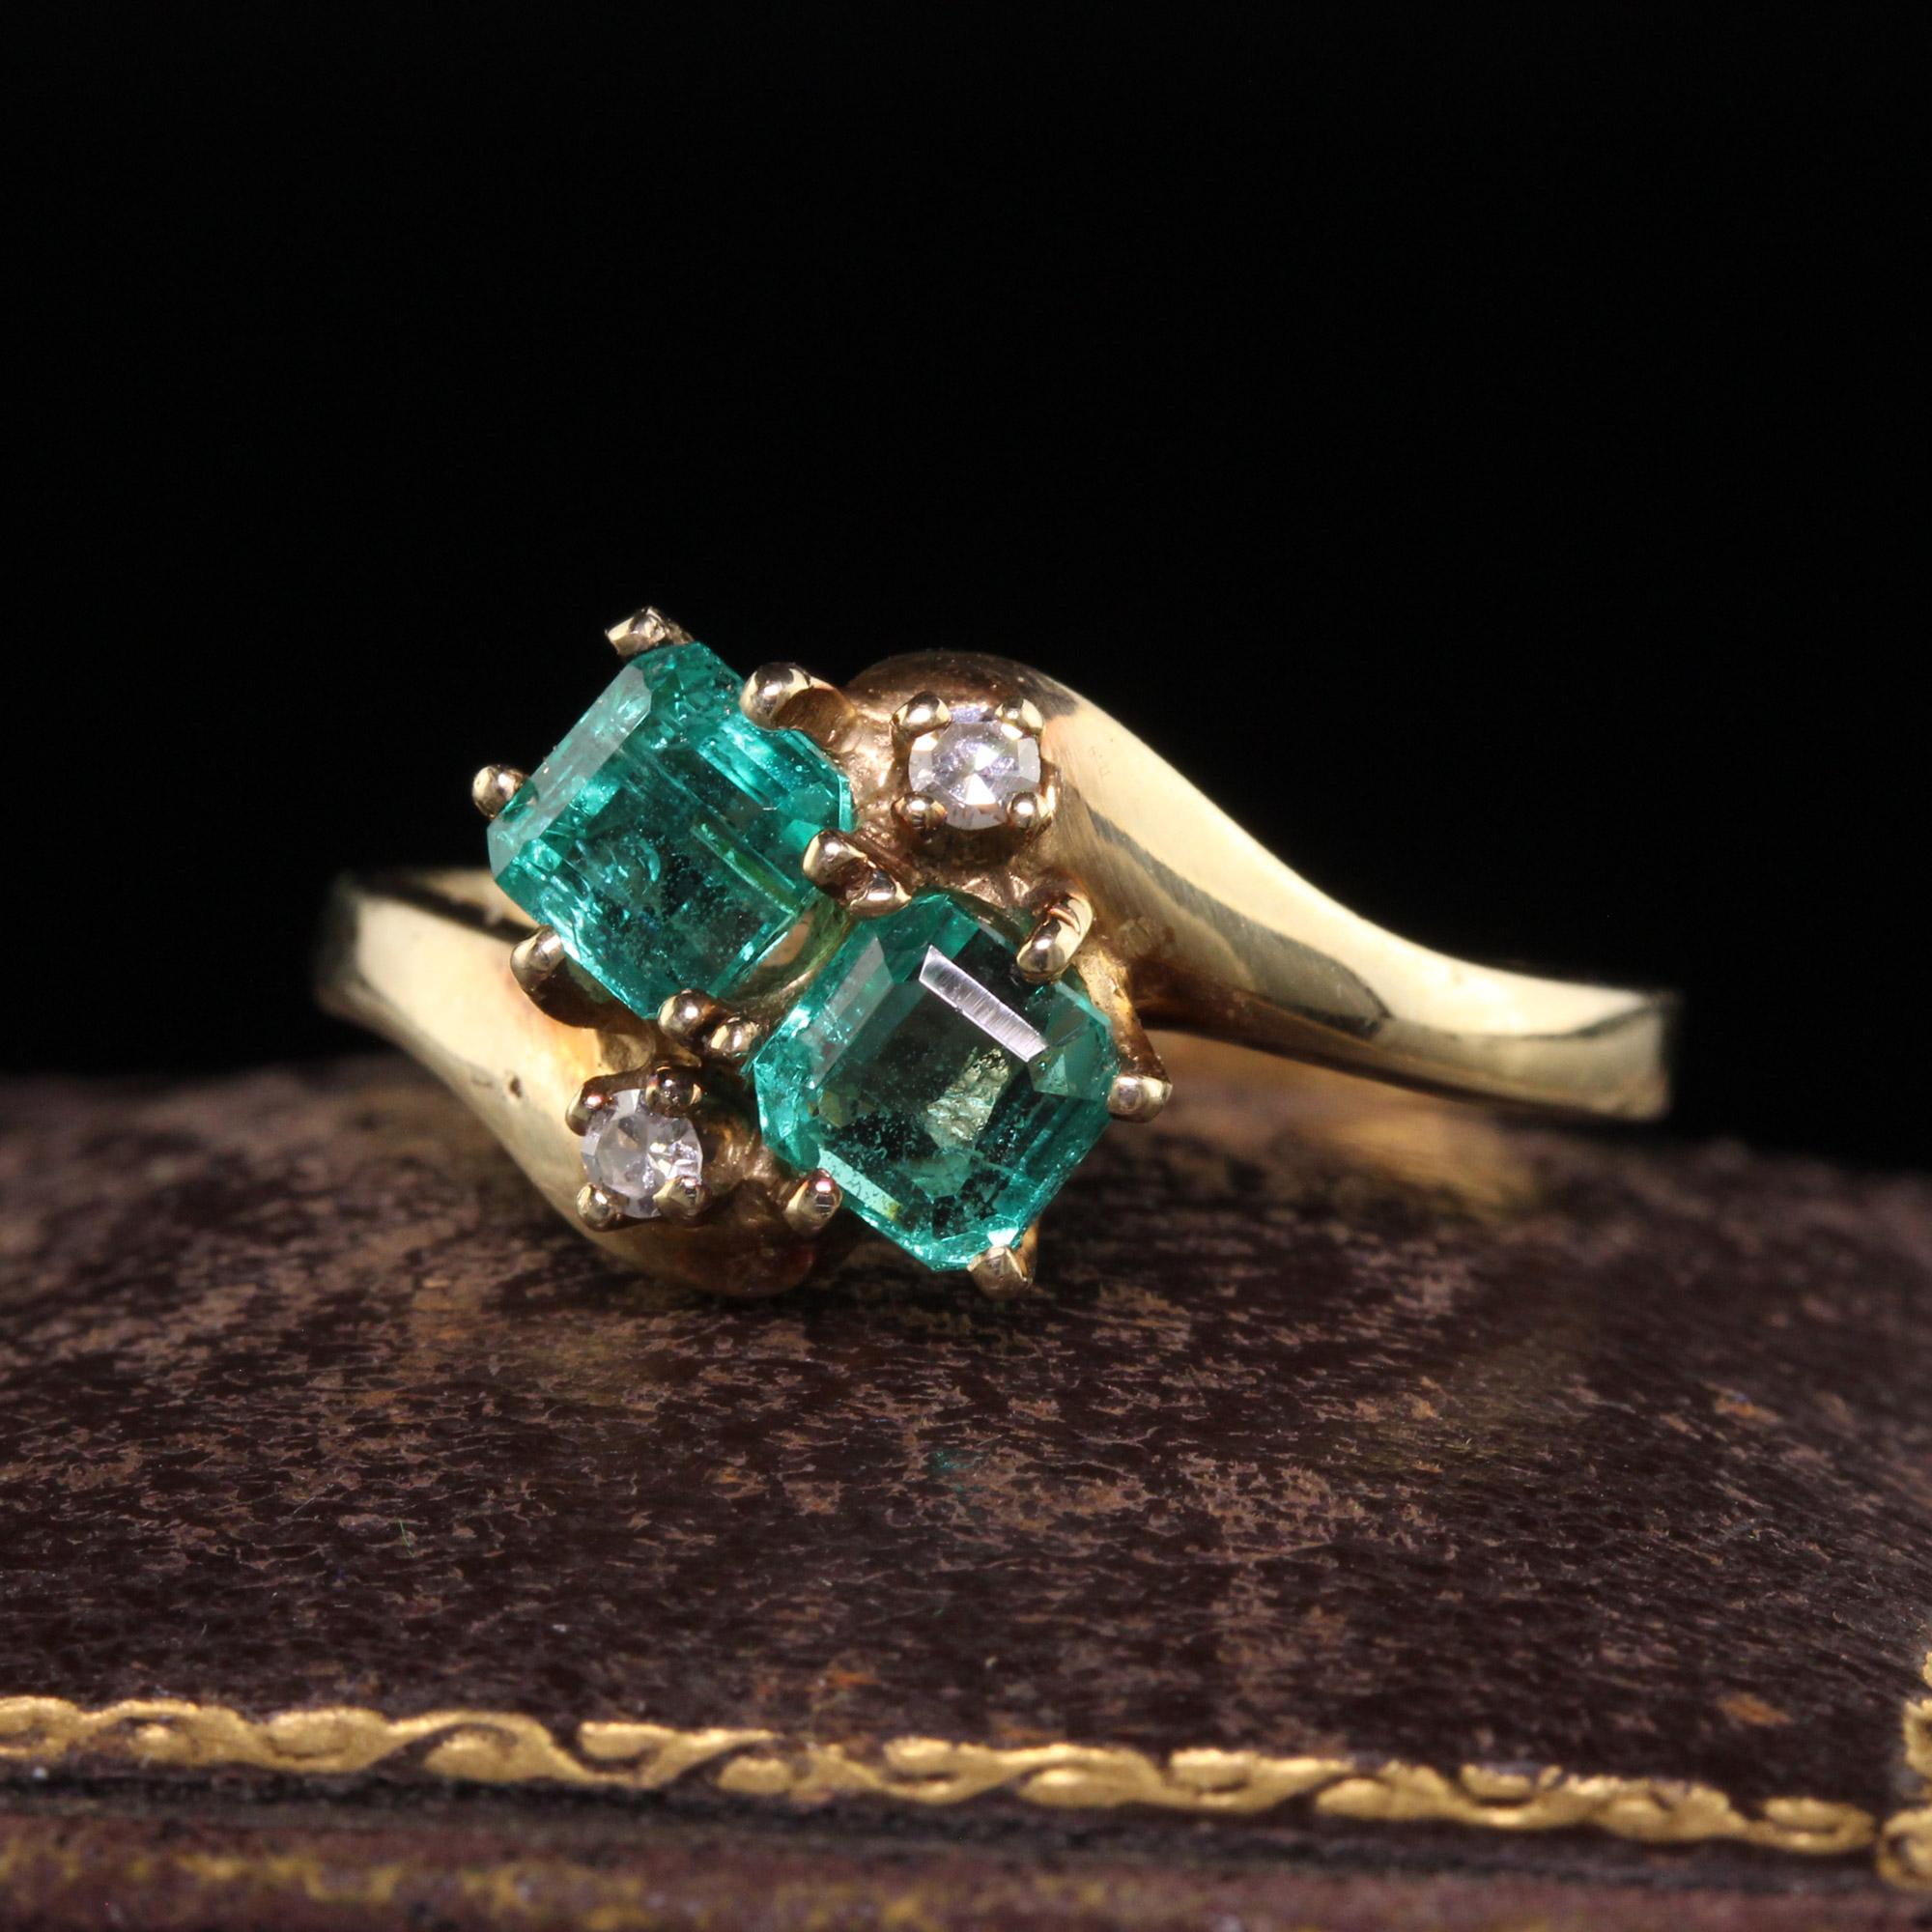 Schöne Vintage Retro 14K Gelbgold kolumbianischen Smaragd Toi et Moi Diamond Ring. Dieser wunderschöne Ring ist aus 14k Gelbgold gefertigt. Der Ring ist mit zwei schönen kolumbianischen Smaragden besetzt, darüber und darunter befinden sich Diamanten